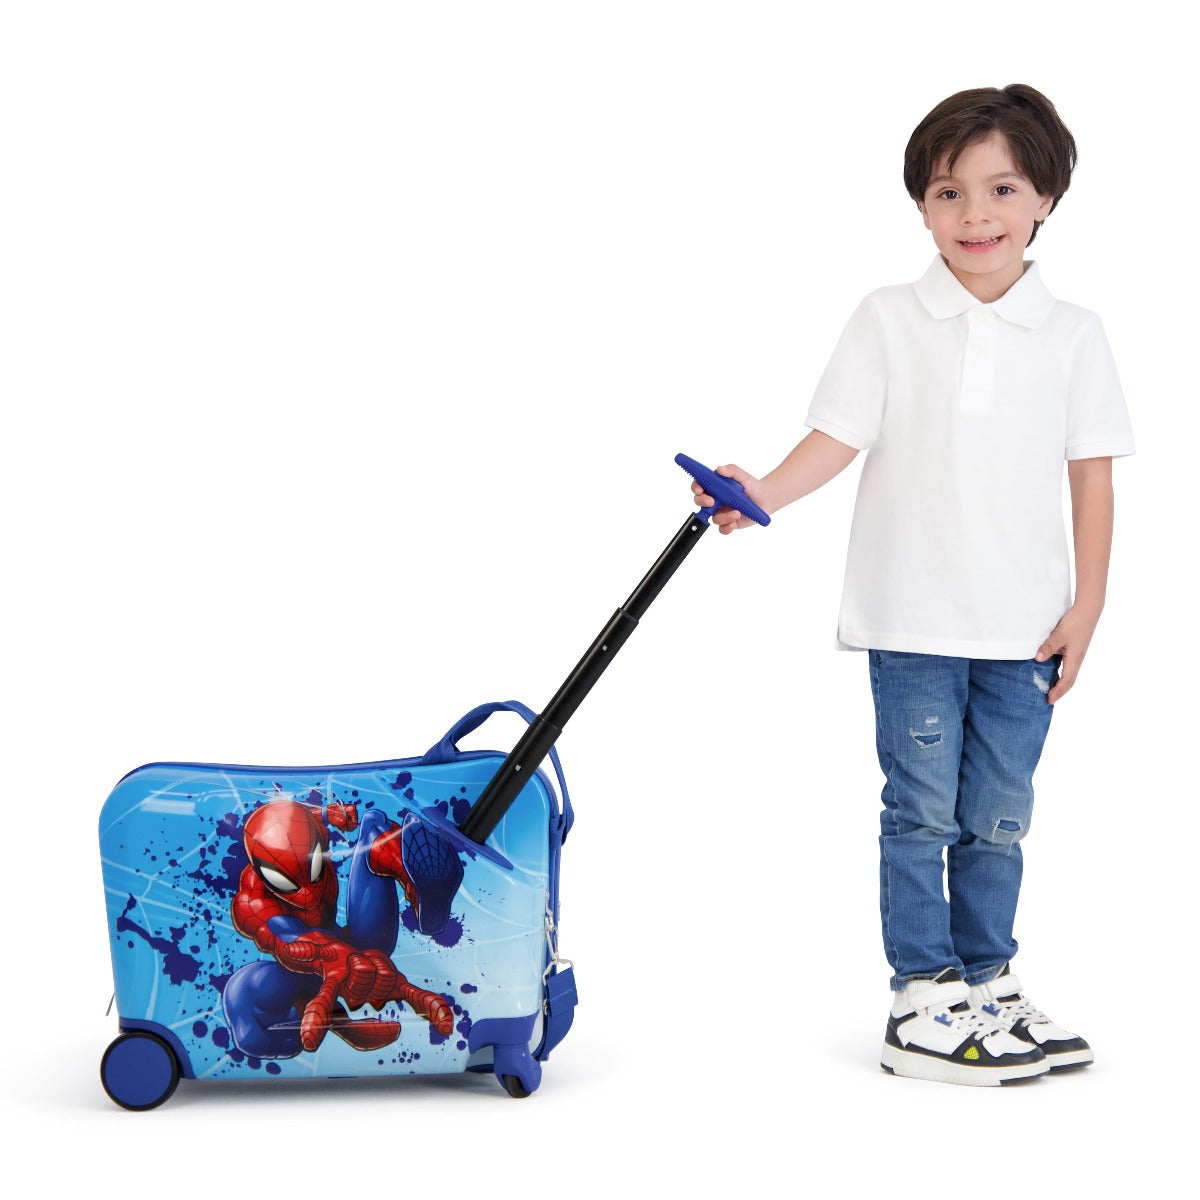 Ful Marvel Spiderman kids ride-along 14.5" hardshell spinner suitcase